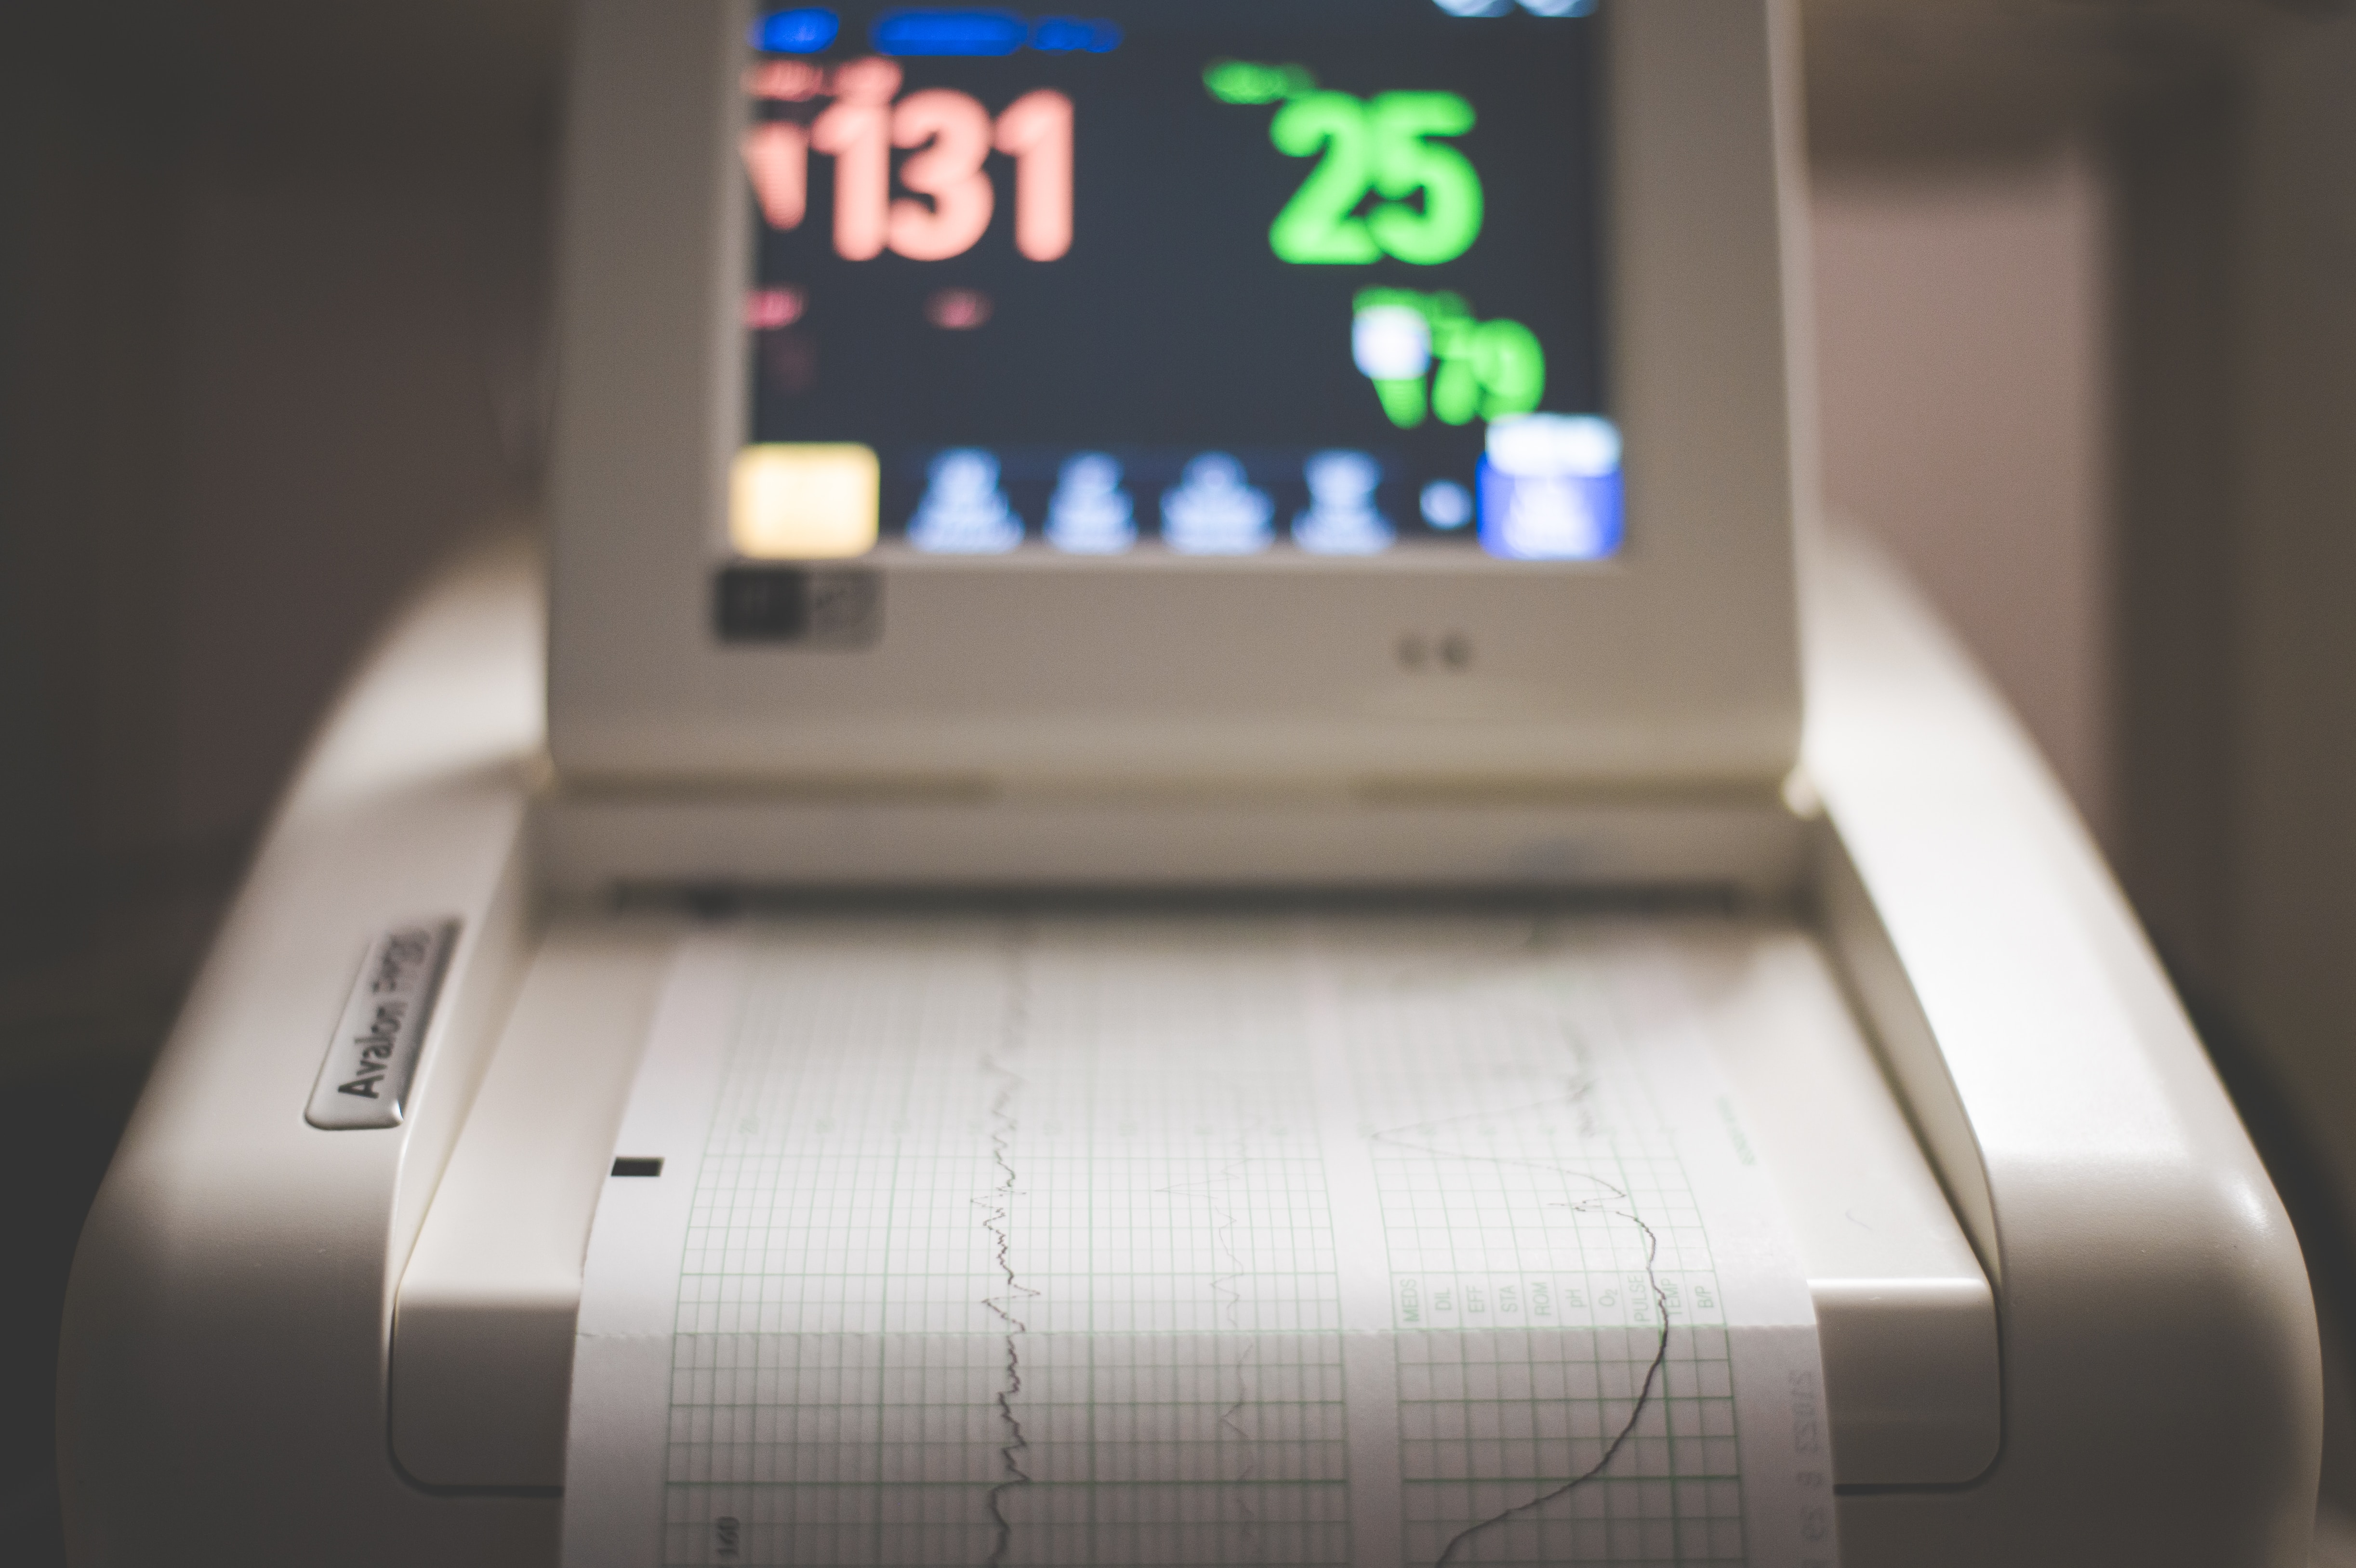 Zu sehen ist ein medizinischer Monitor, der die Herzfrequenz anzeigt. 